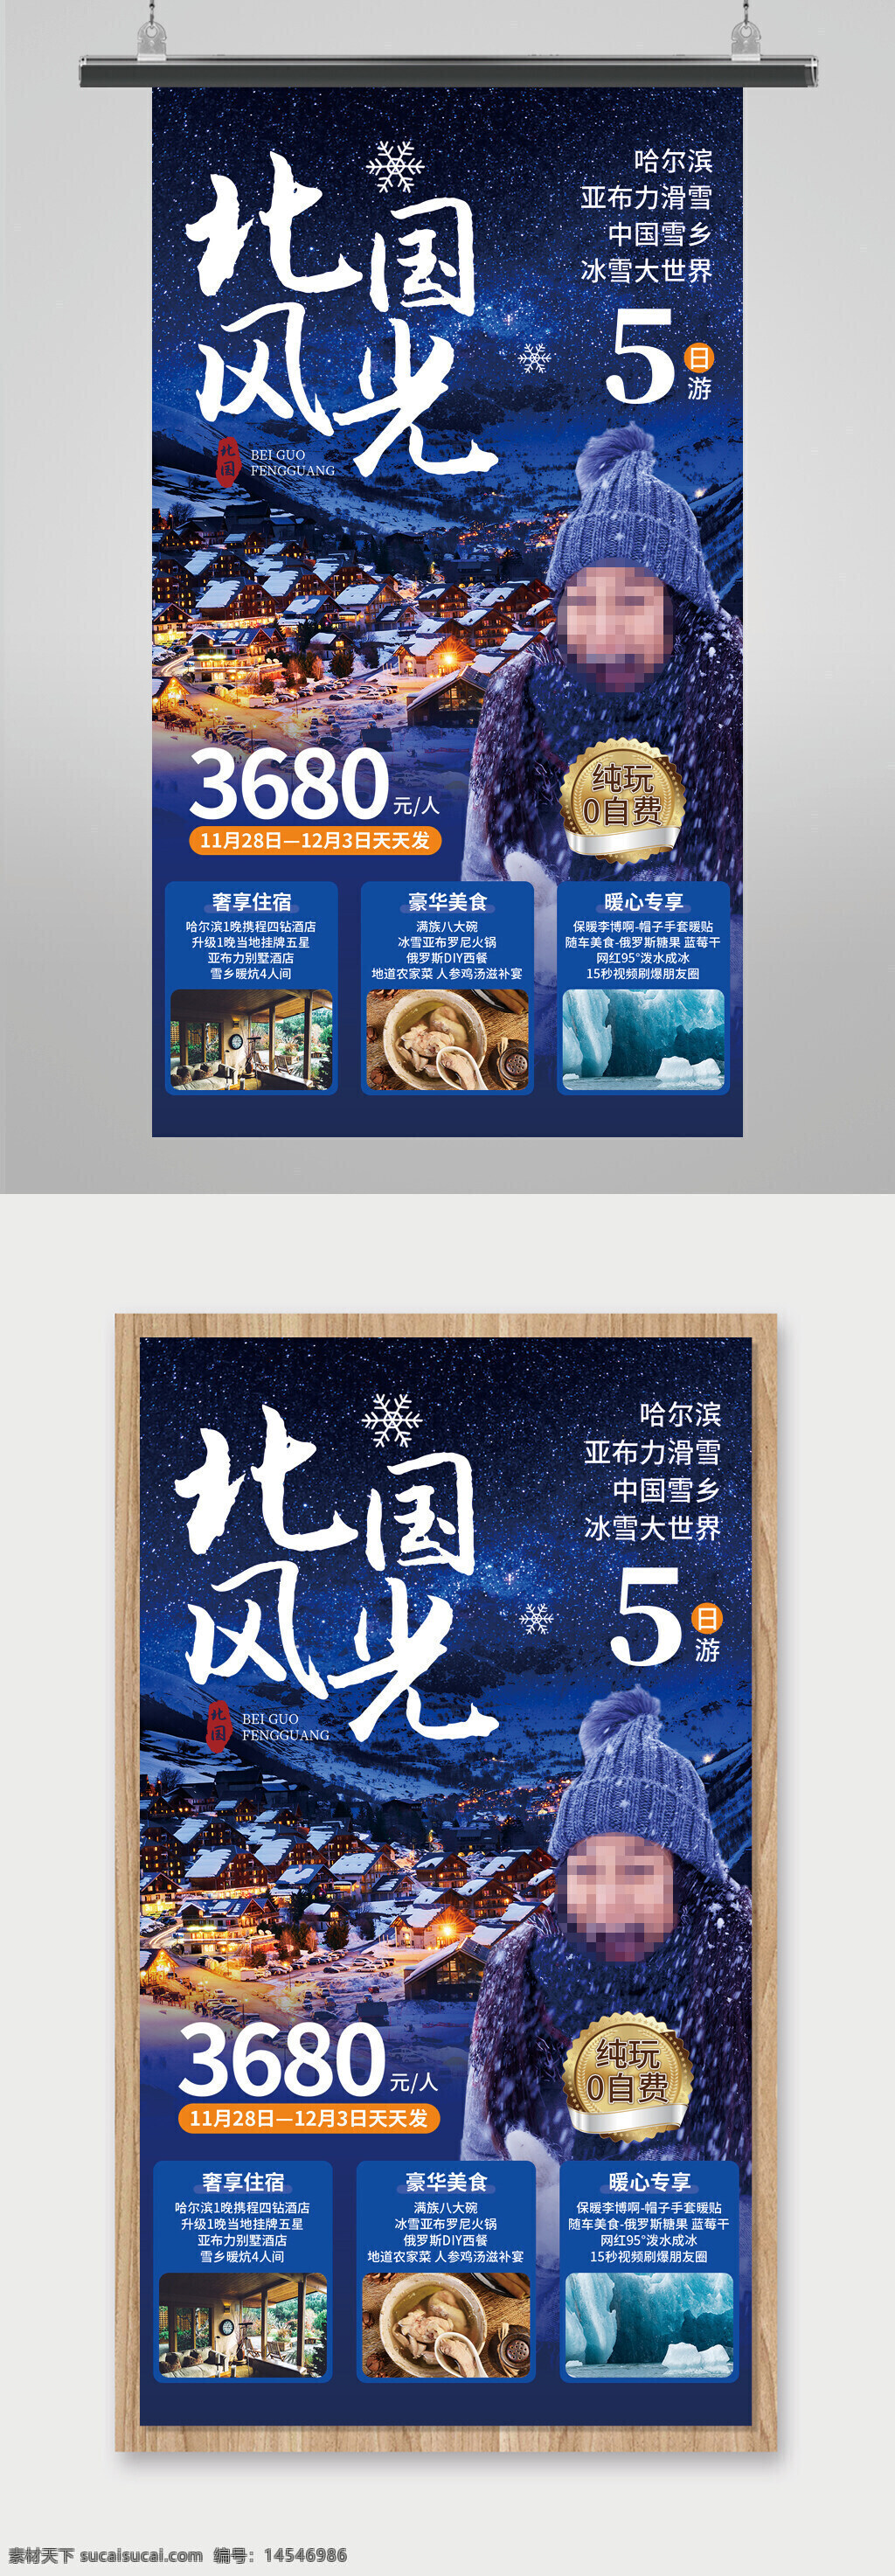 北国风光 北国雪景 冬季旅游手机海报 冬季旅游宣传海报 冬季旅游活动宣传